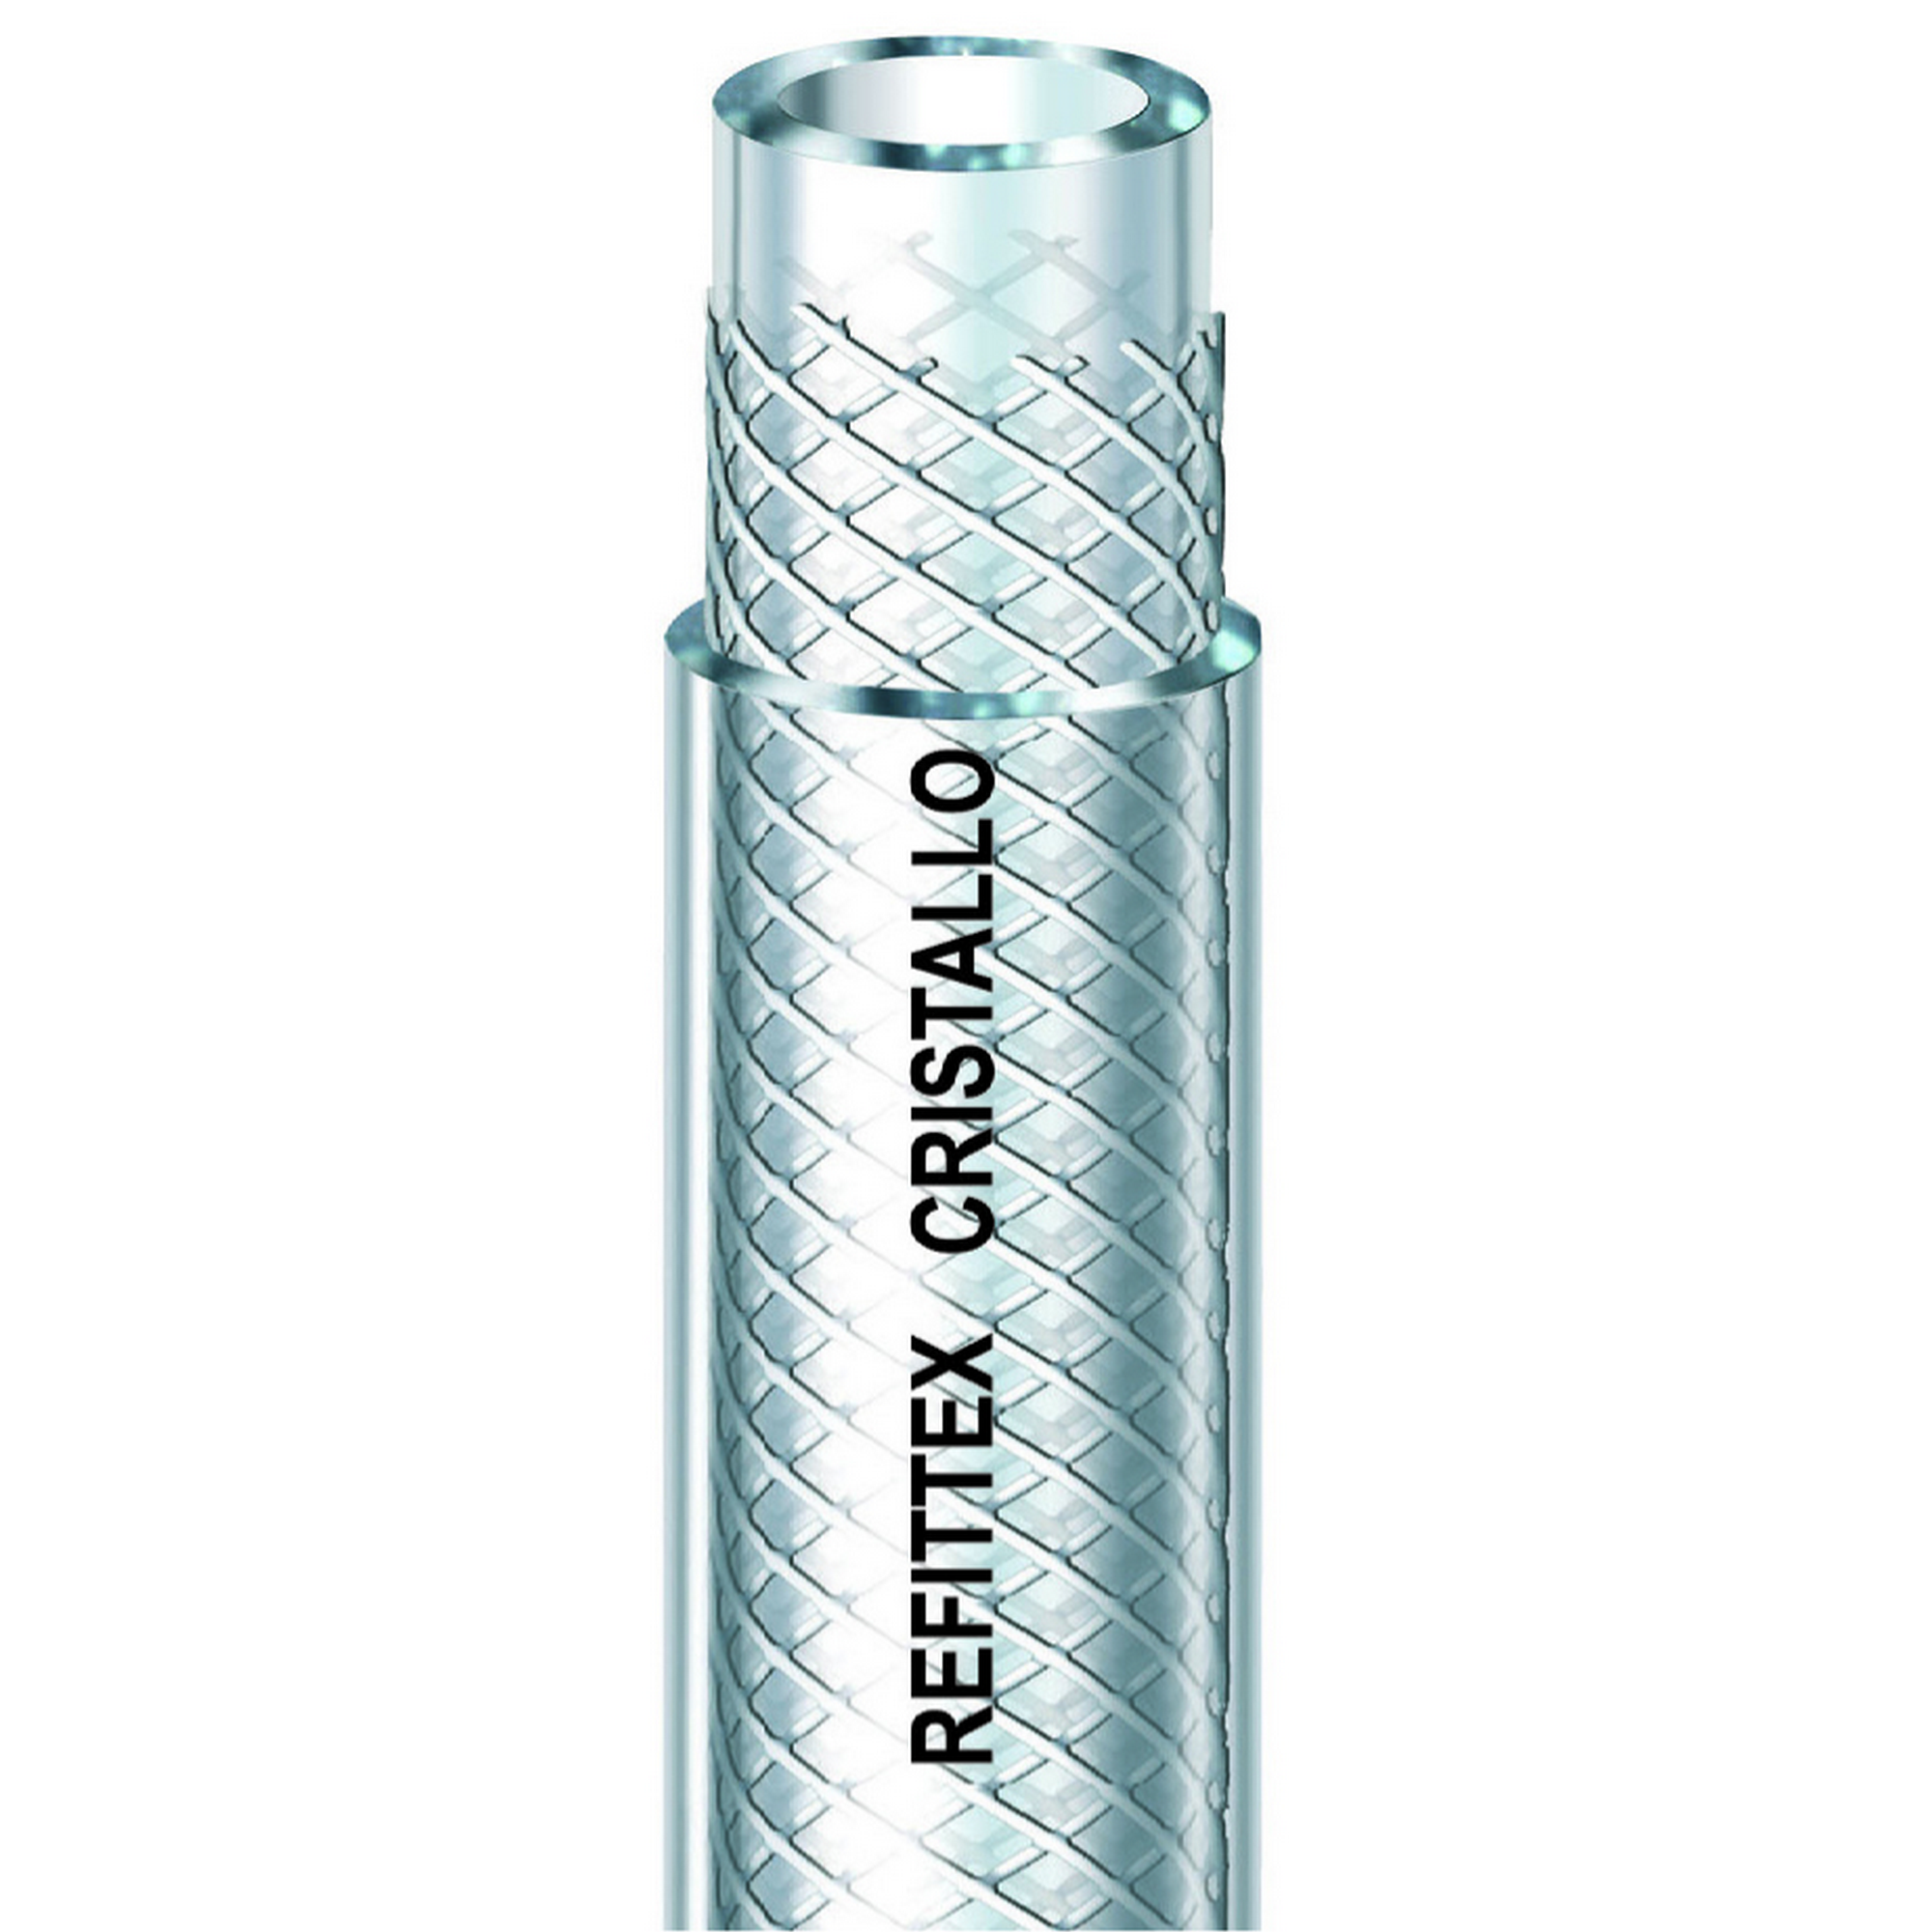 Gewebeschlauch 'Refittex Cristallo' transparent Ø 9 mm + product picture